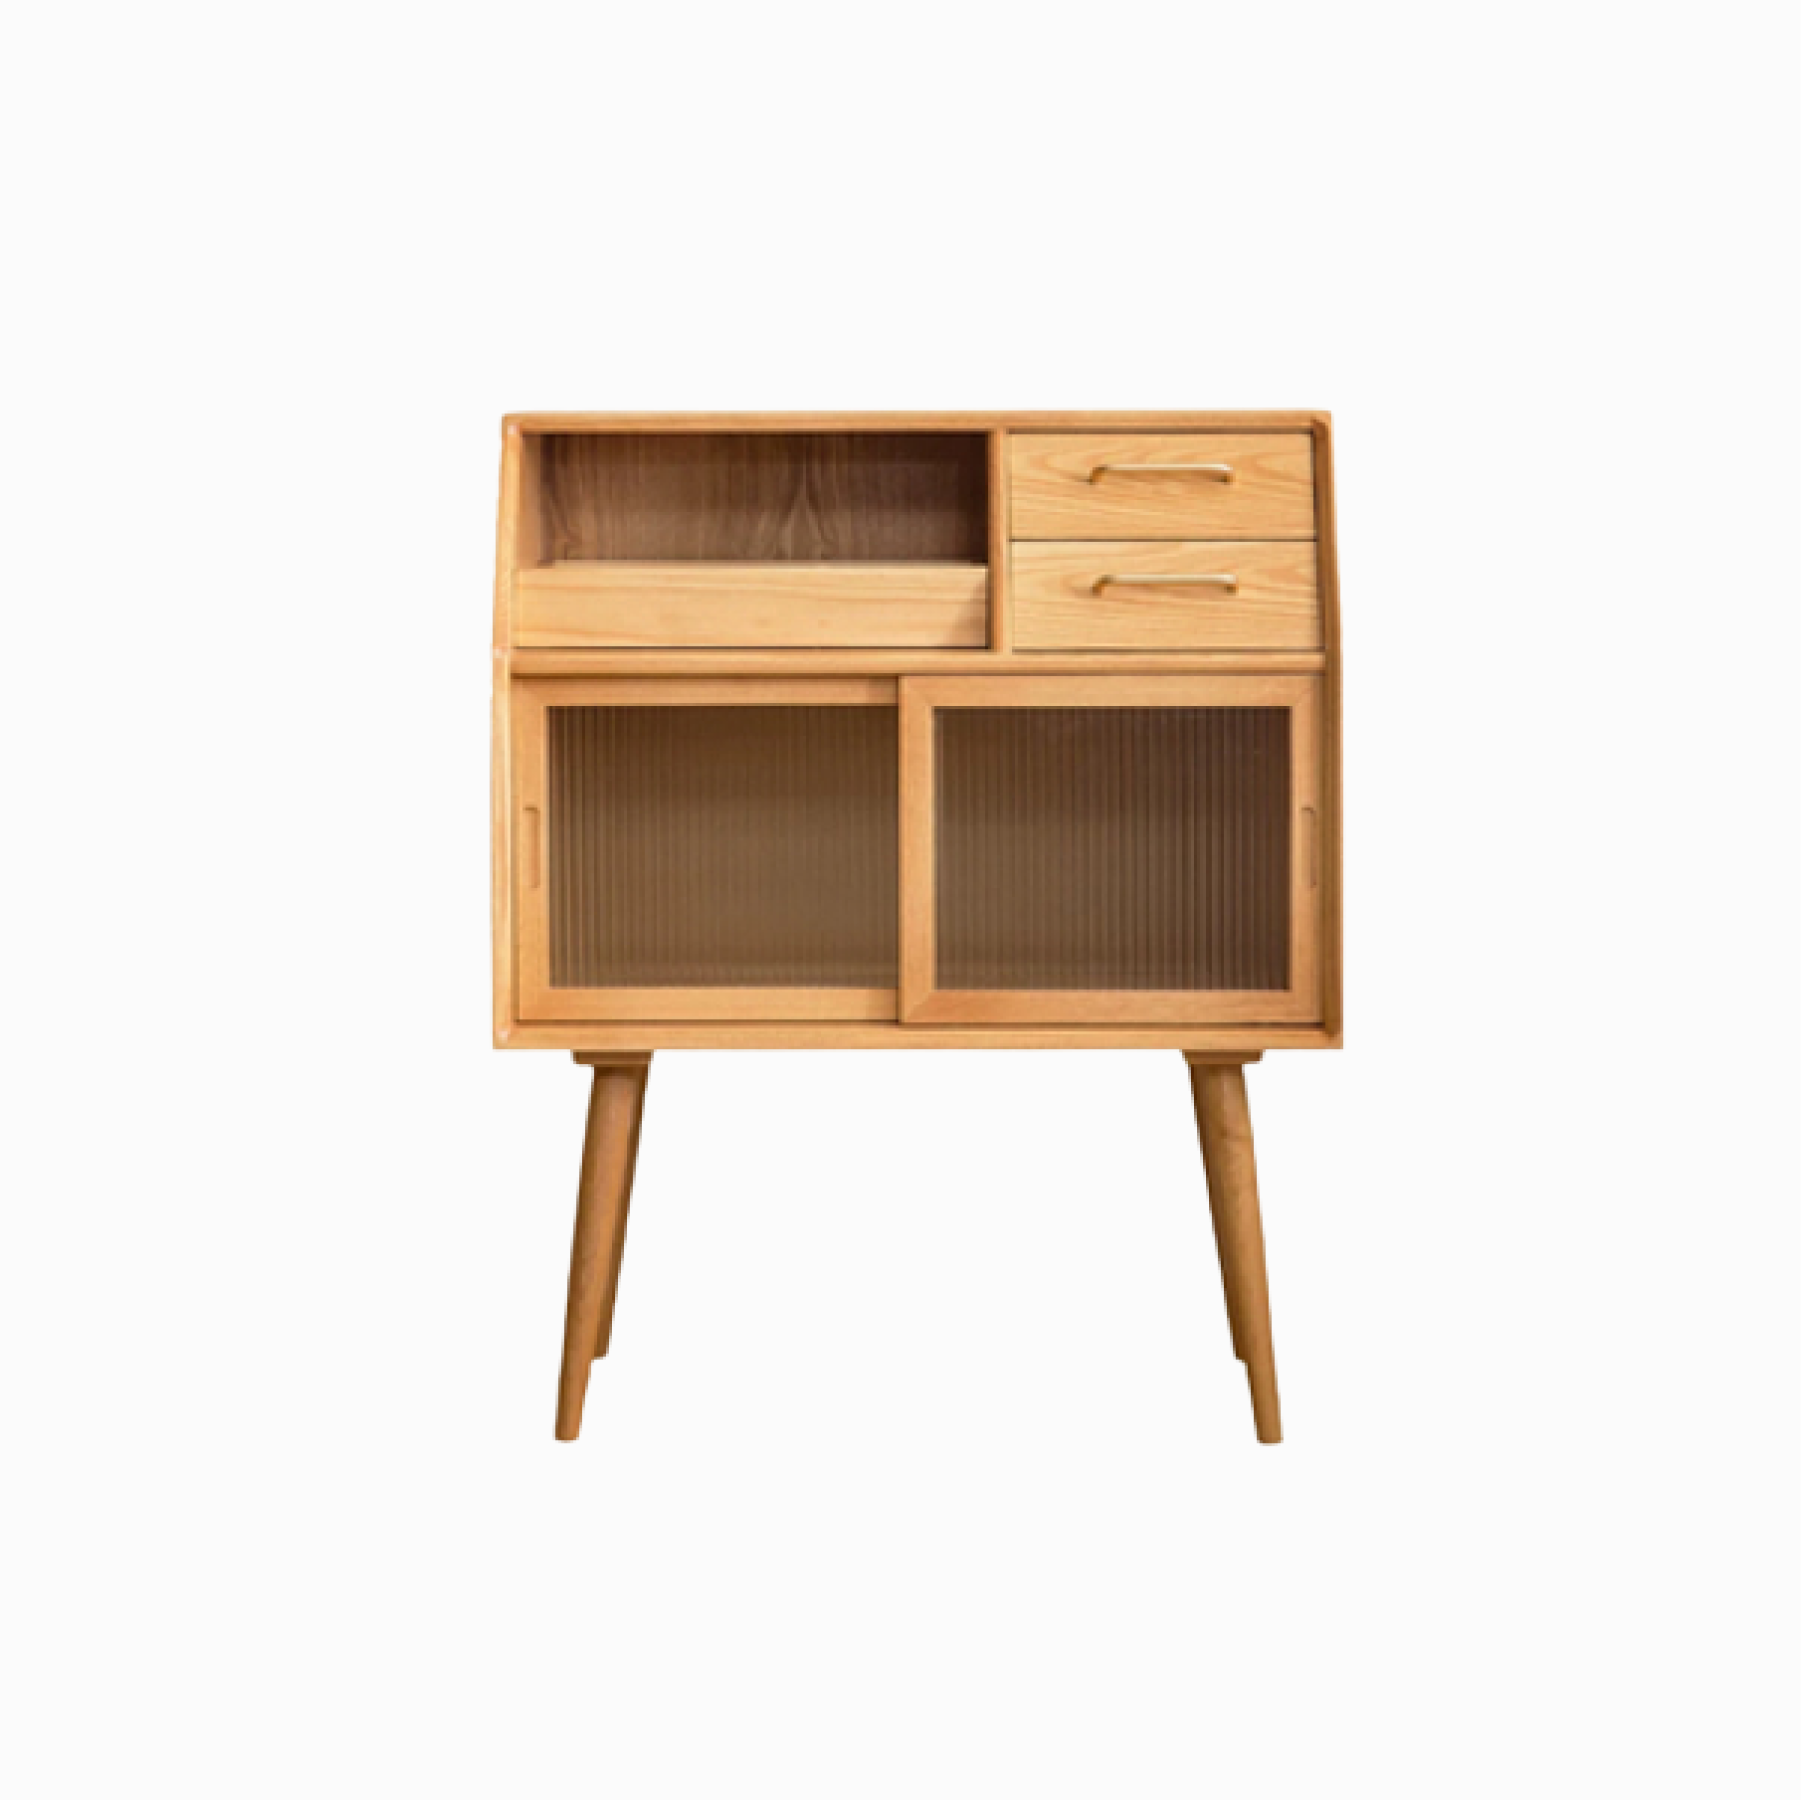 Tom Pine Wood Kitchen Storage Cabinet II